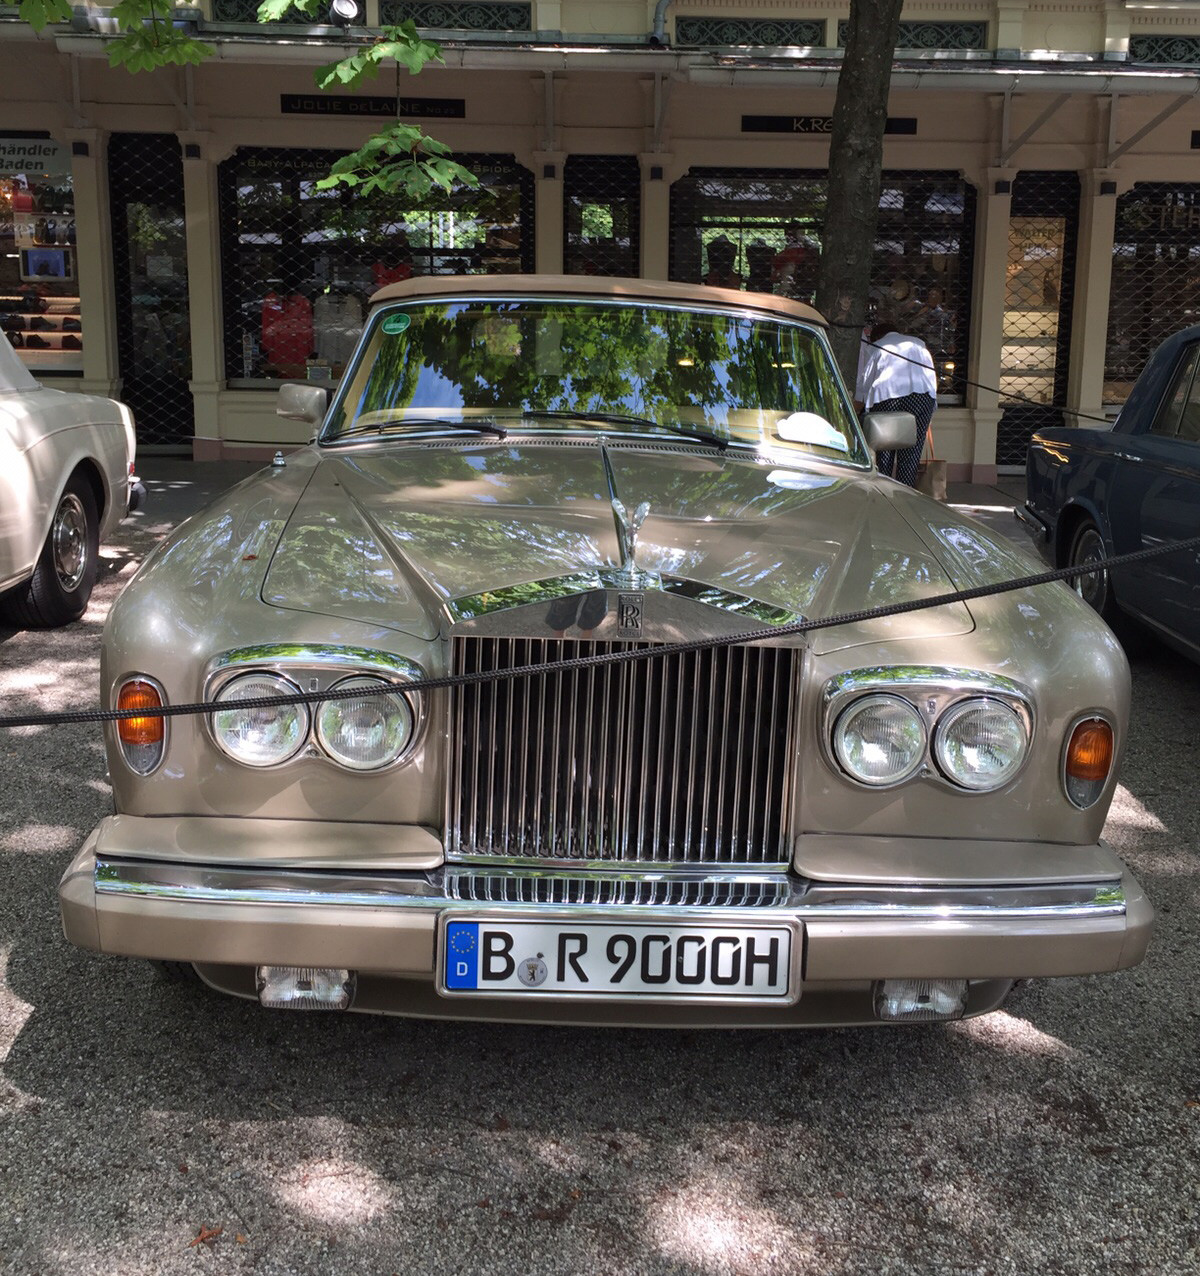 Rolls-Royce<br />
Выставка ретроавтомобилей в Баден-Бадене! Проходит в настоящее время. Июль 2015